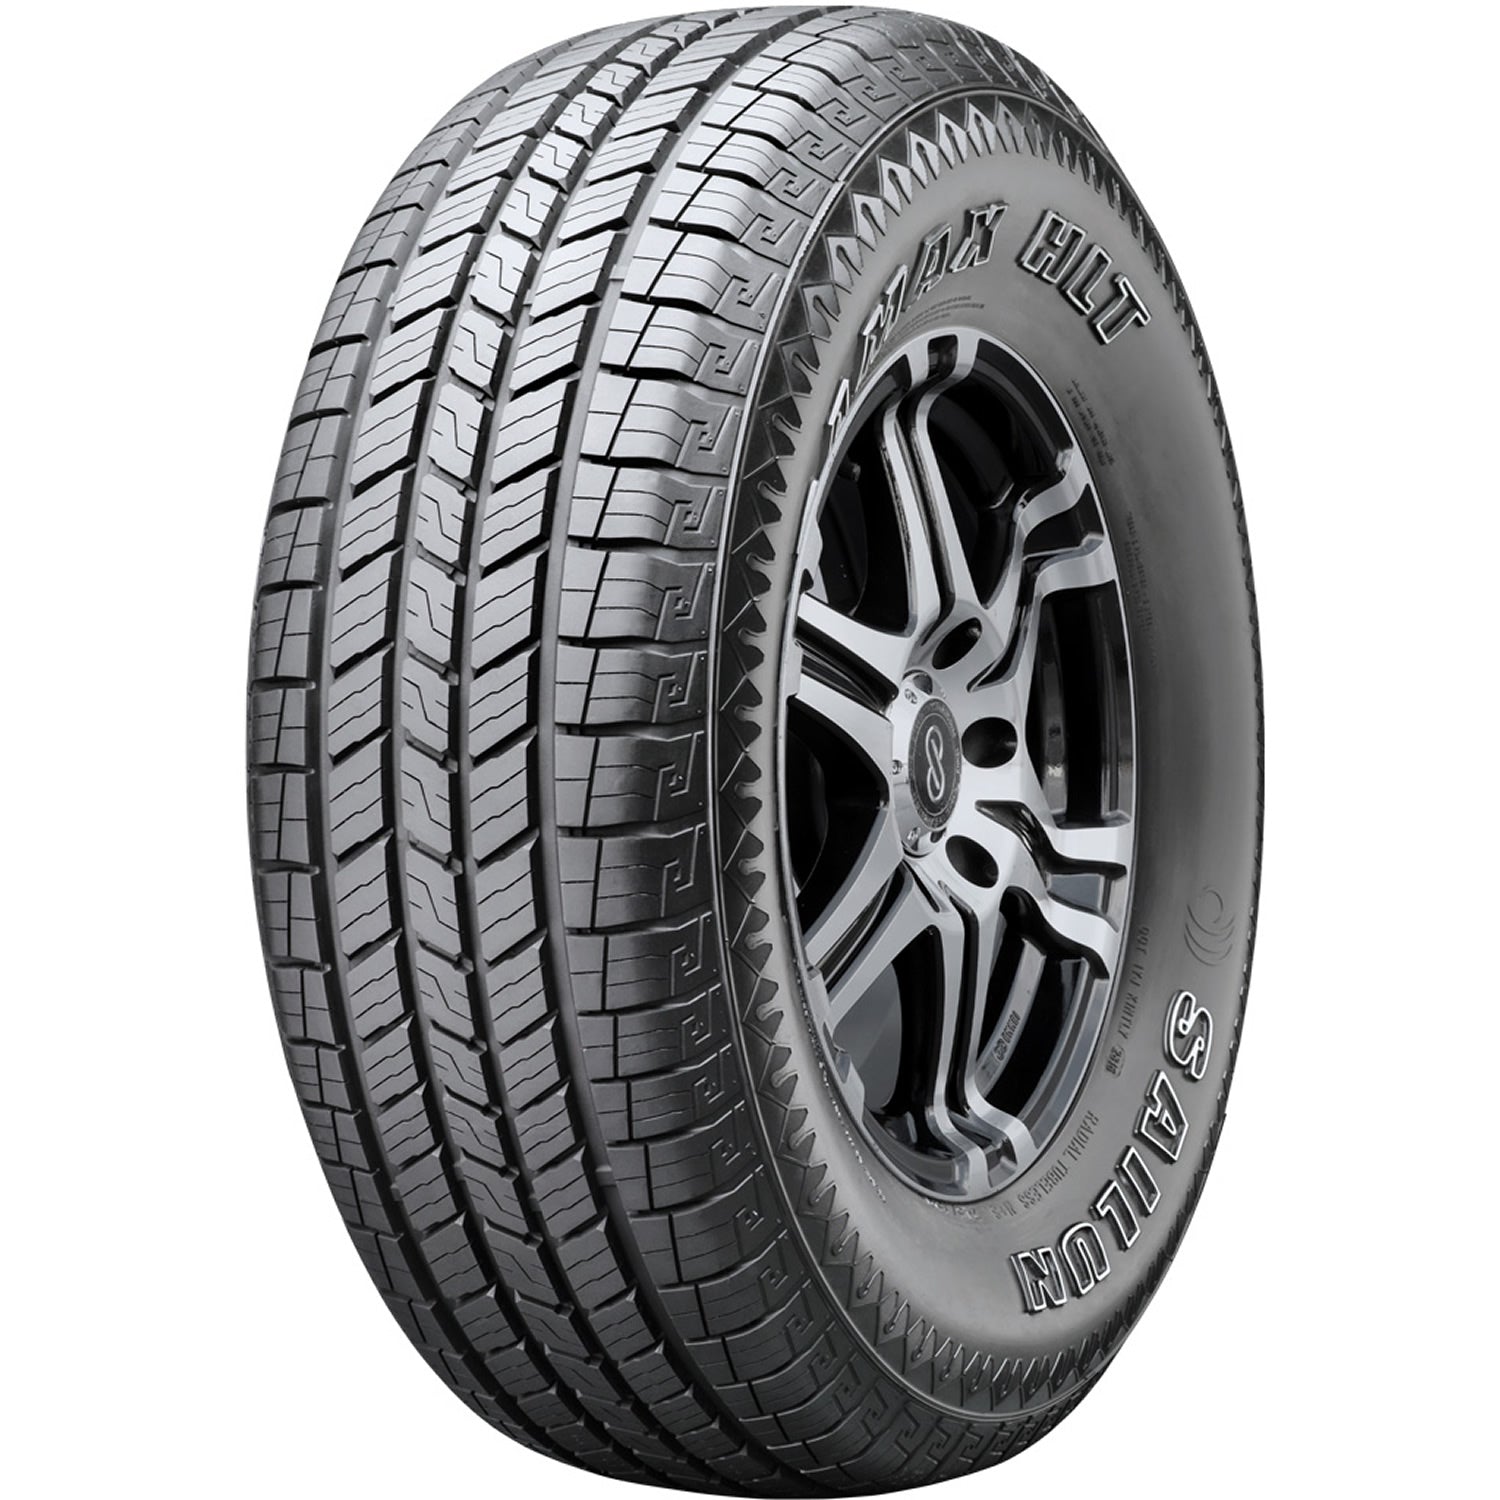 SAILUN TERRAMAX HLT 255/65R18 (31.1X10.2R 18) Tires